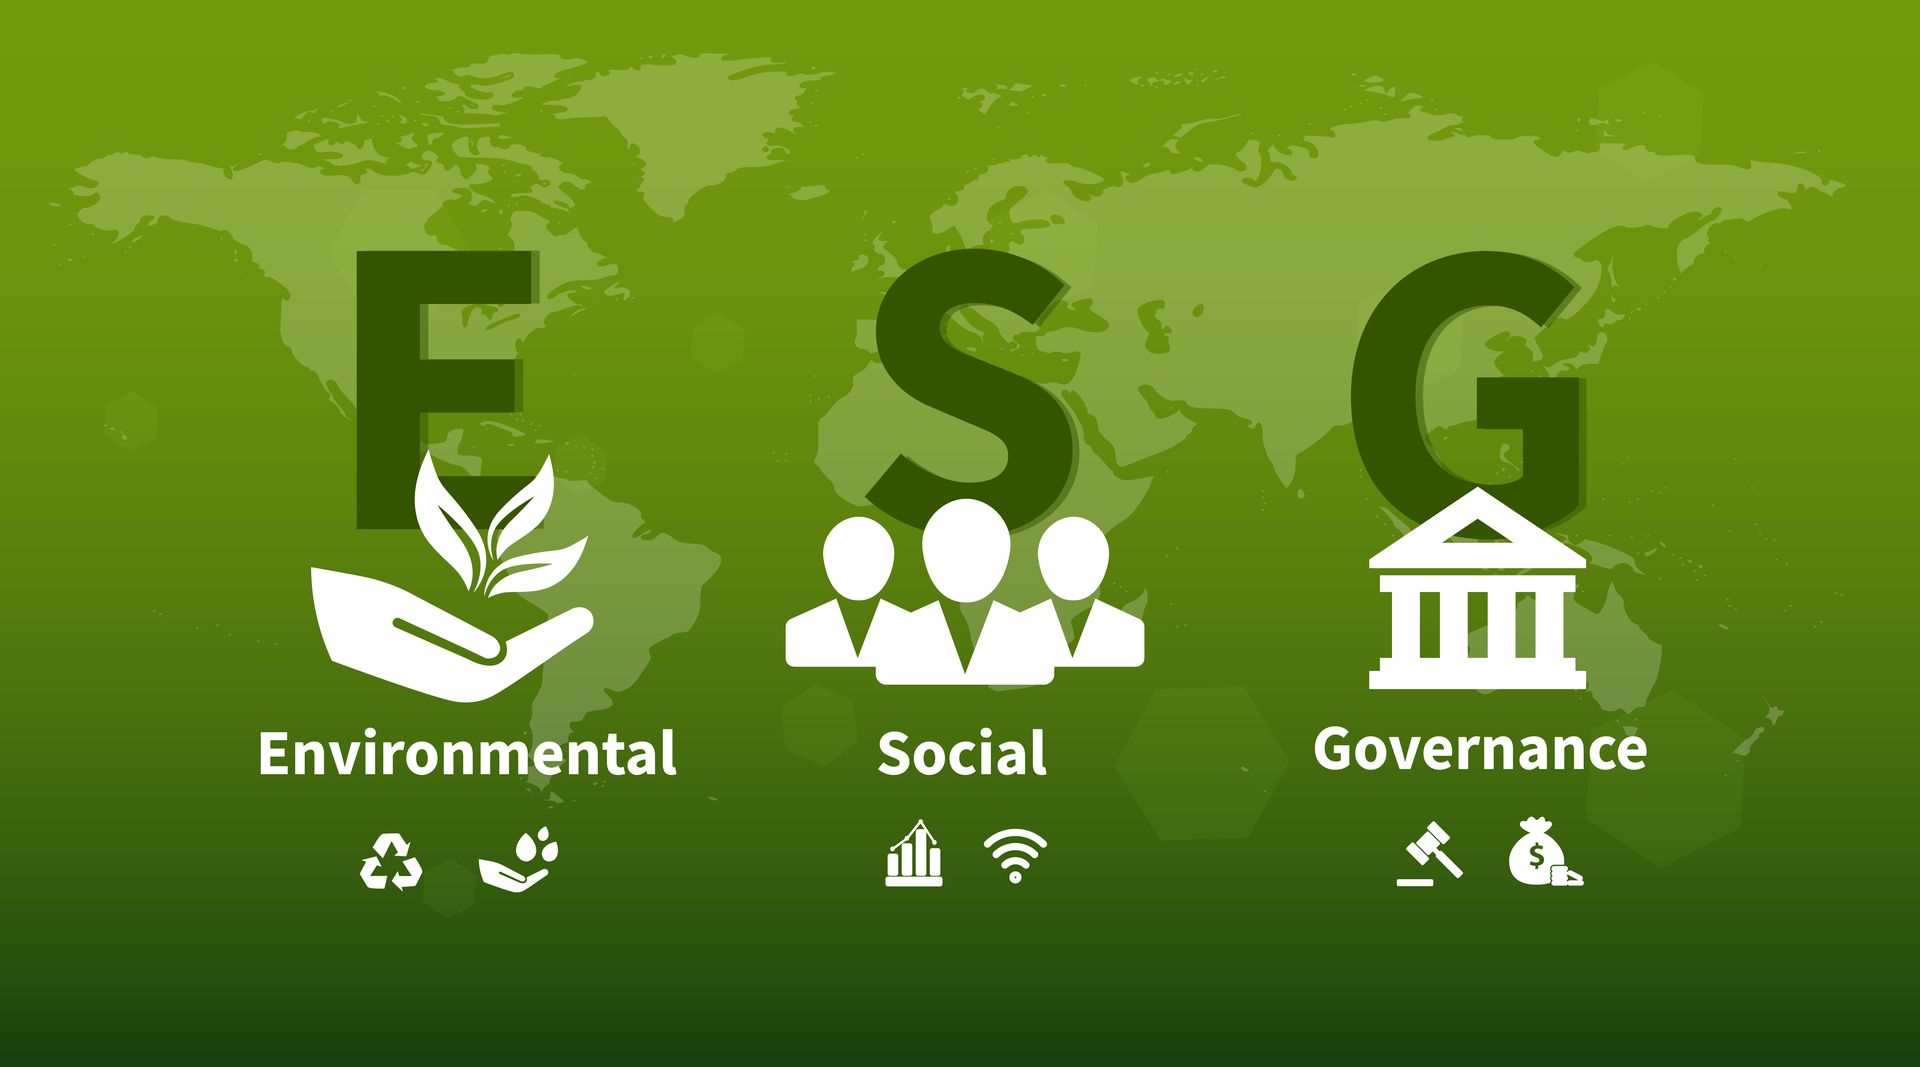 ​ESG แนวคิดเกี่ยวกับการพัฒนาขององค์กรอย่างยั่งยืน โดยไม่หวังผลกำไรเพียงอย่างเดียว โดย ESG ย่อมาจาก Environmental (สิ่งแวดล้อม), Social (สังคม) และ Governance (ธรรมาภิบาล)